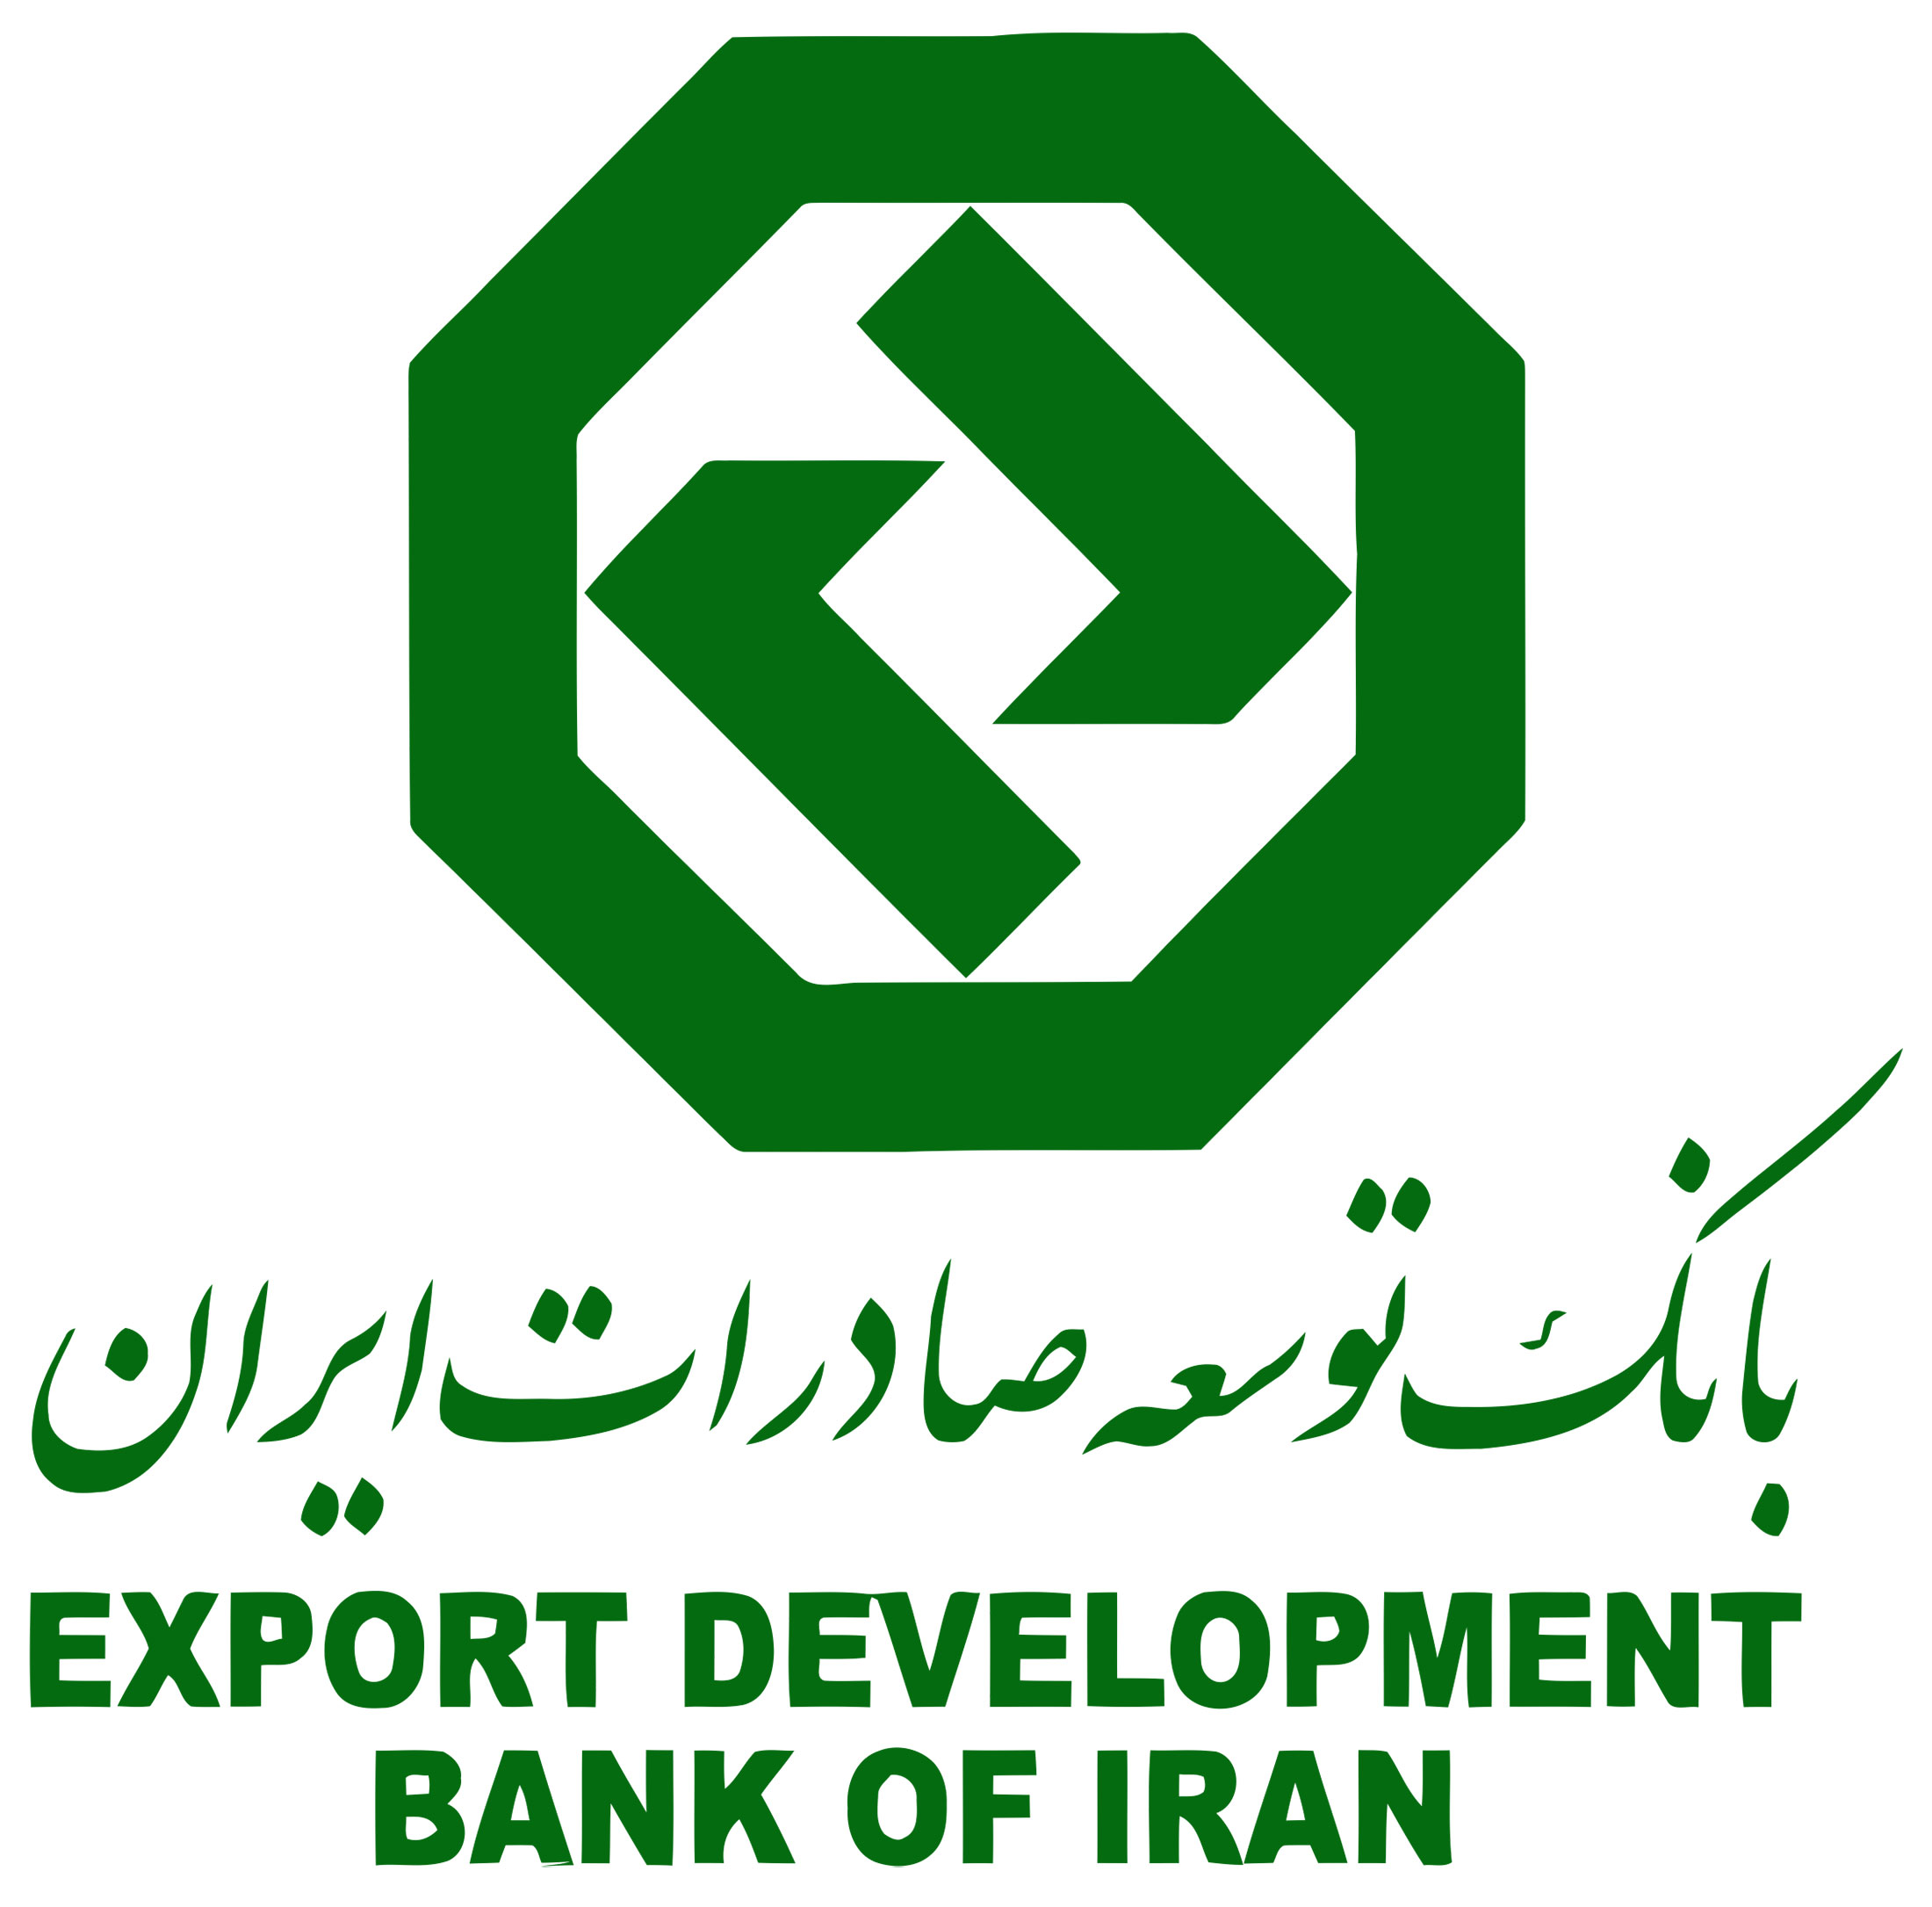 توصیه های بانک توسعه صادرات برای تامین امنیت اطلاعات بانکی مشتریان